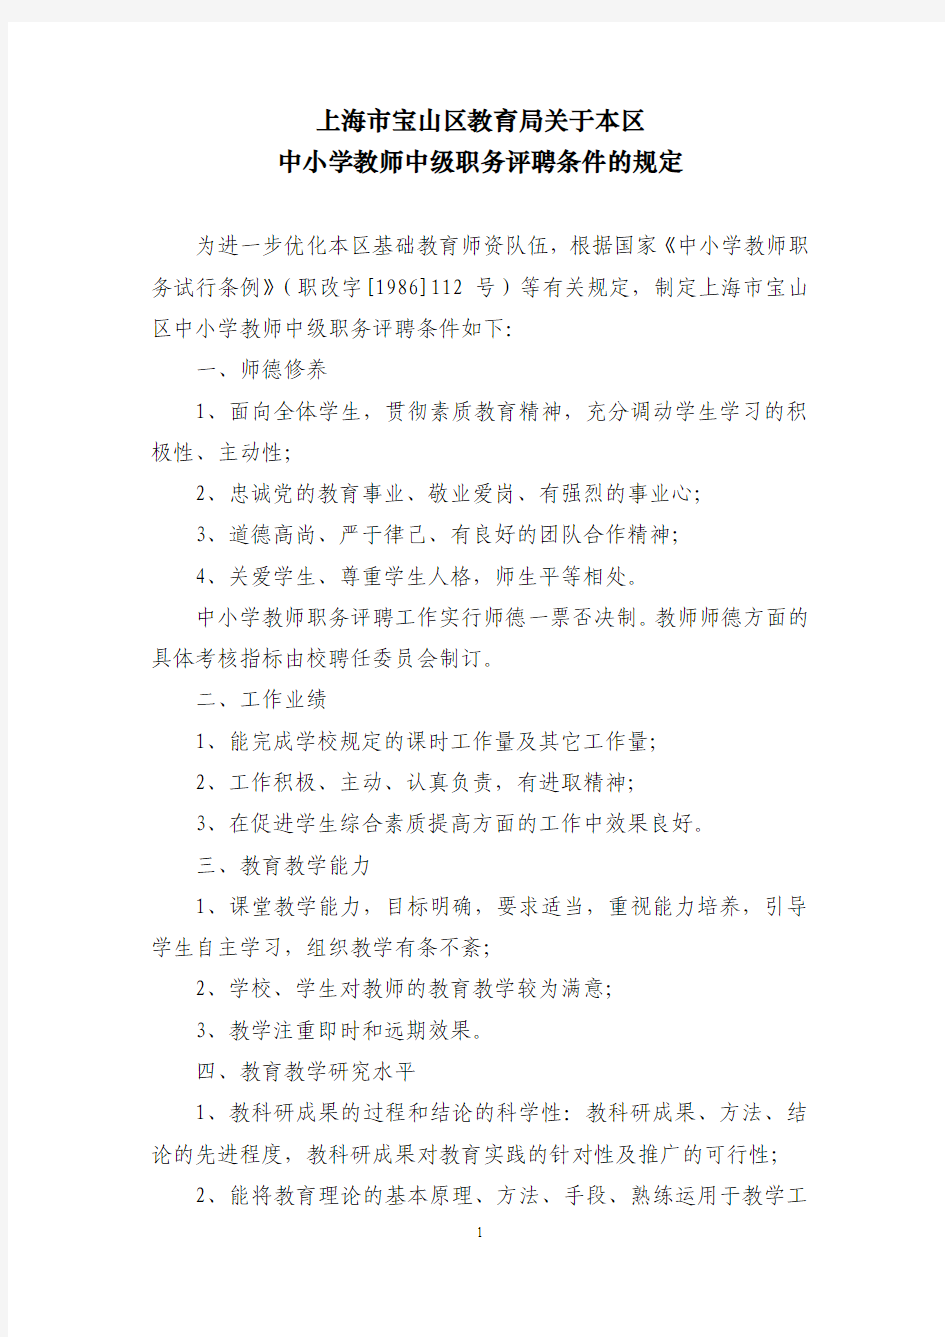 上海市宝山区教育局关于本区中小学教师中级职务评聘条件的规定